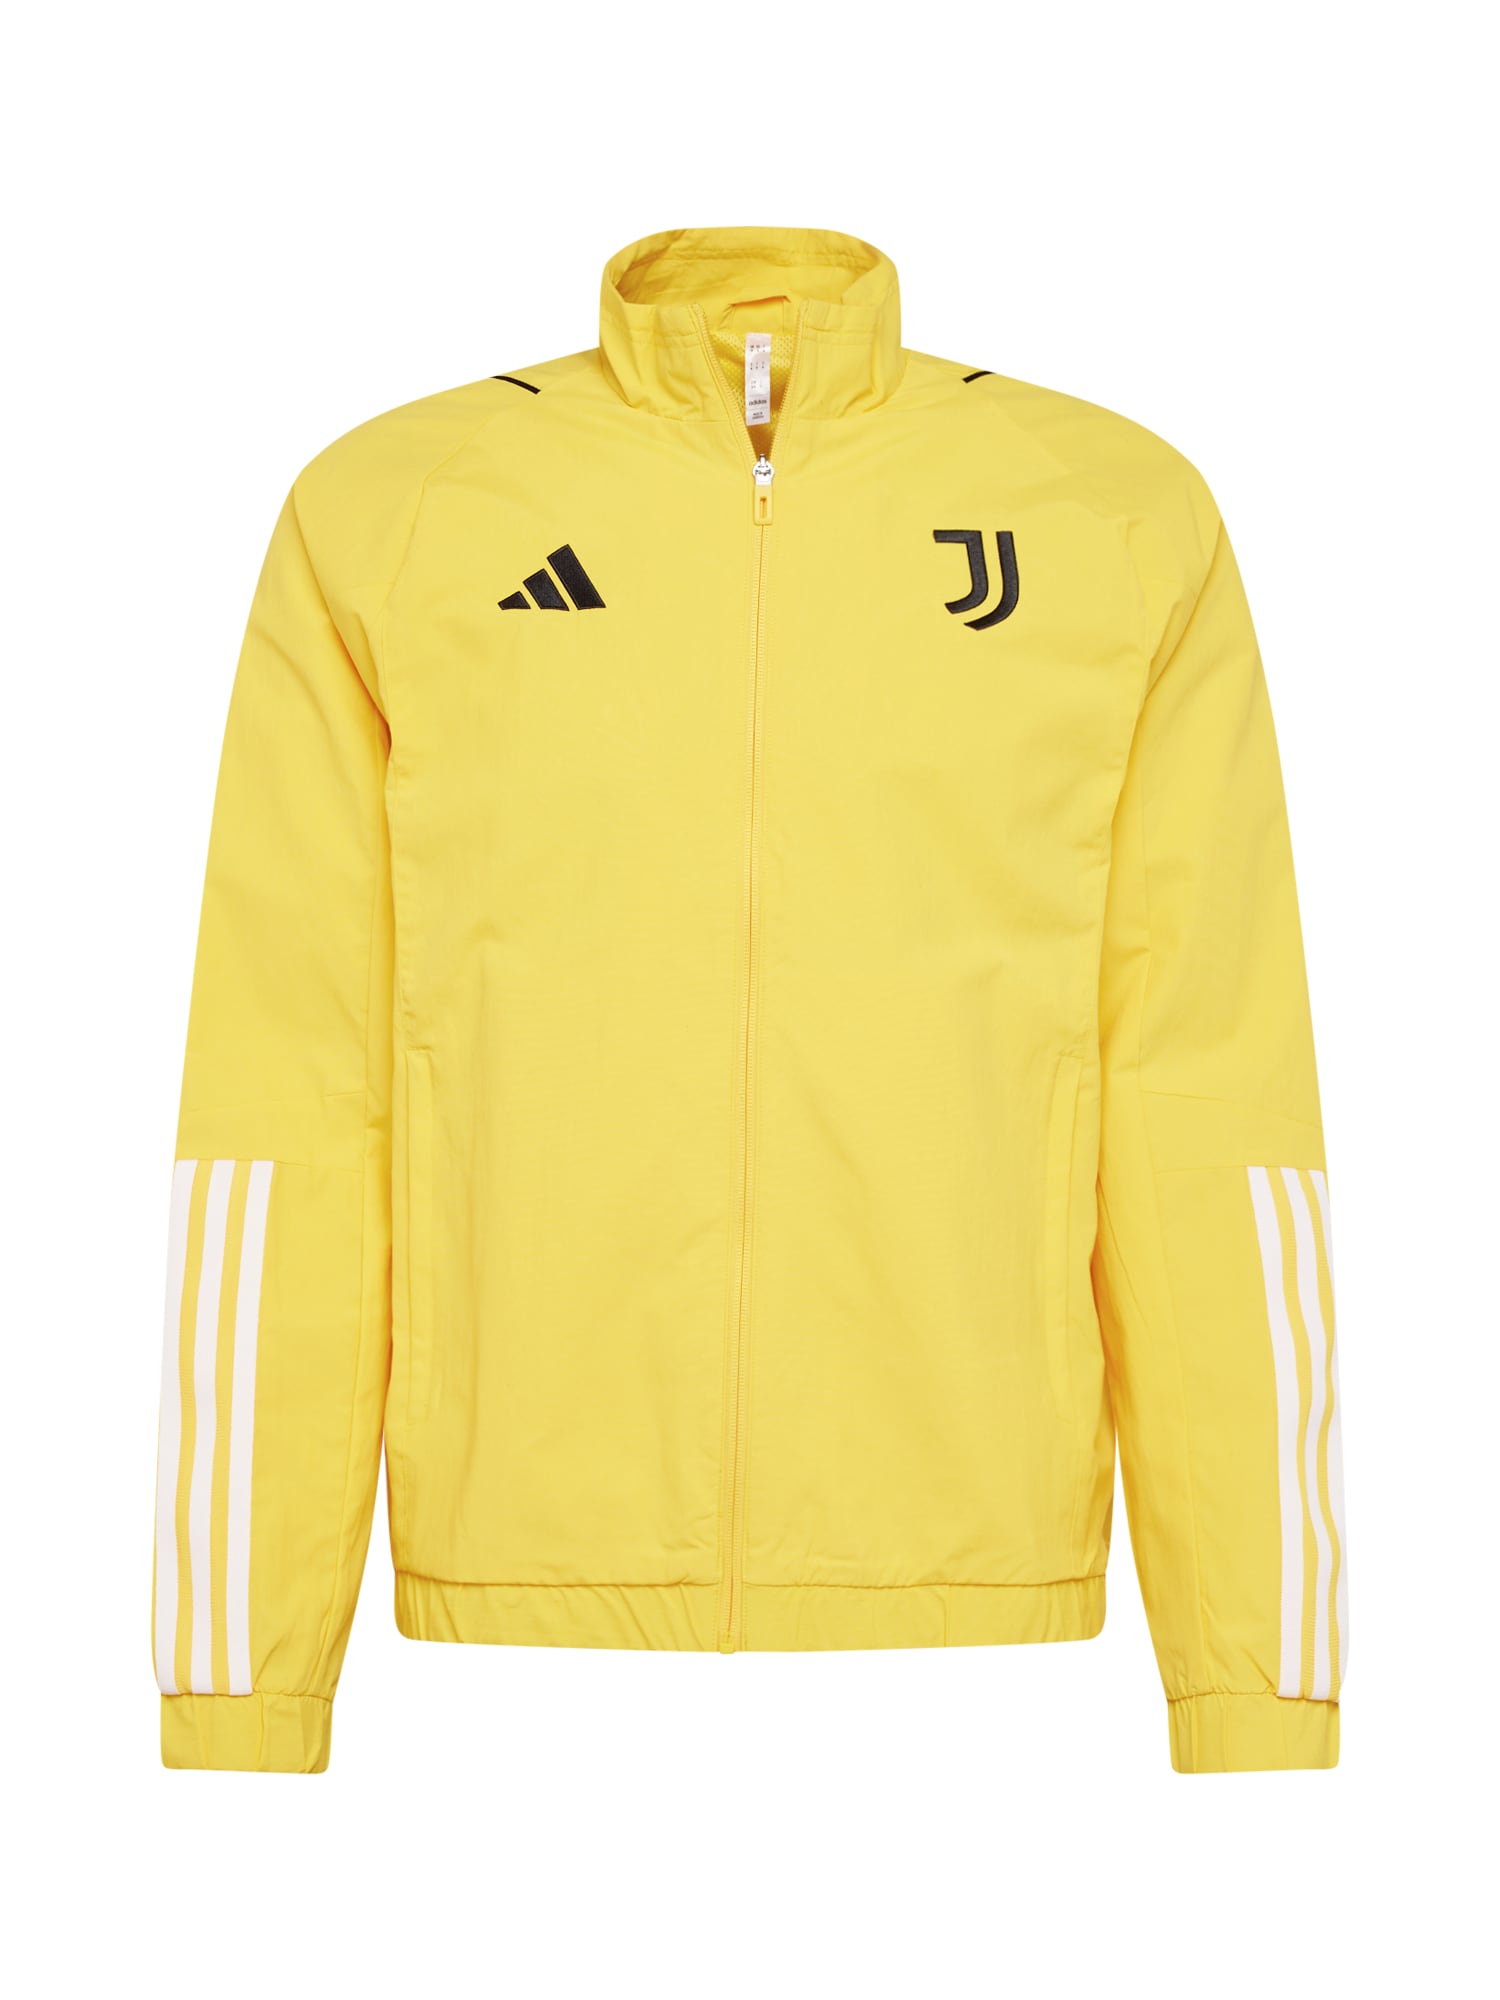 ADIDAS PERFORMANCE Sportska jakna 'JUVE'  žuta / crna / bijela